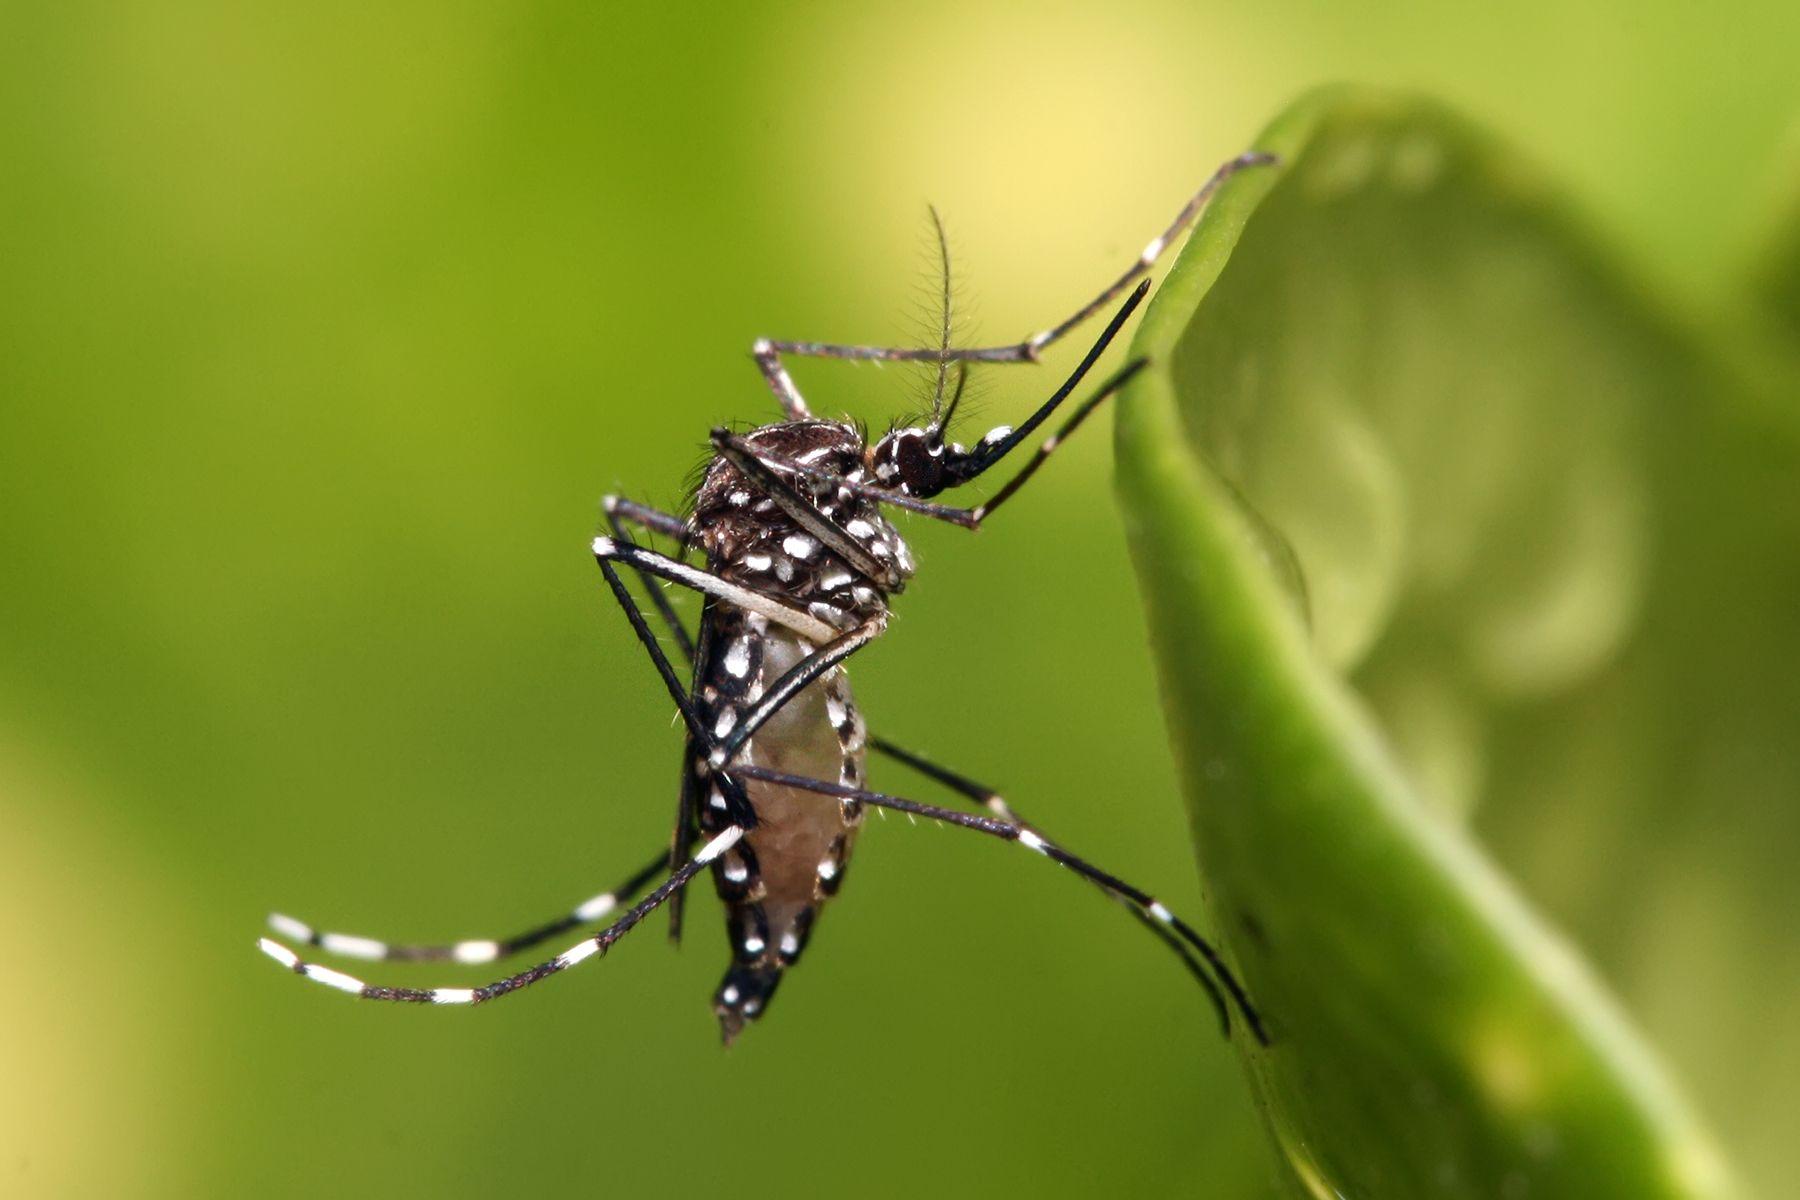 mosquito borne diseases